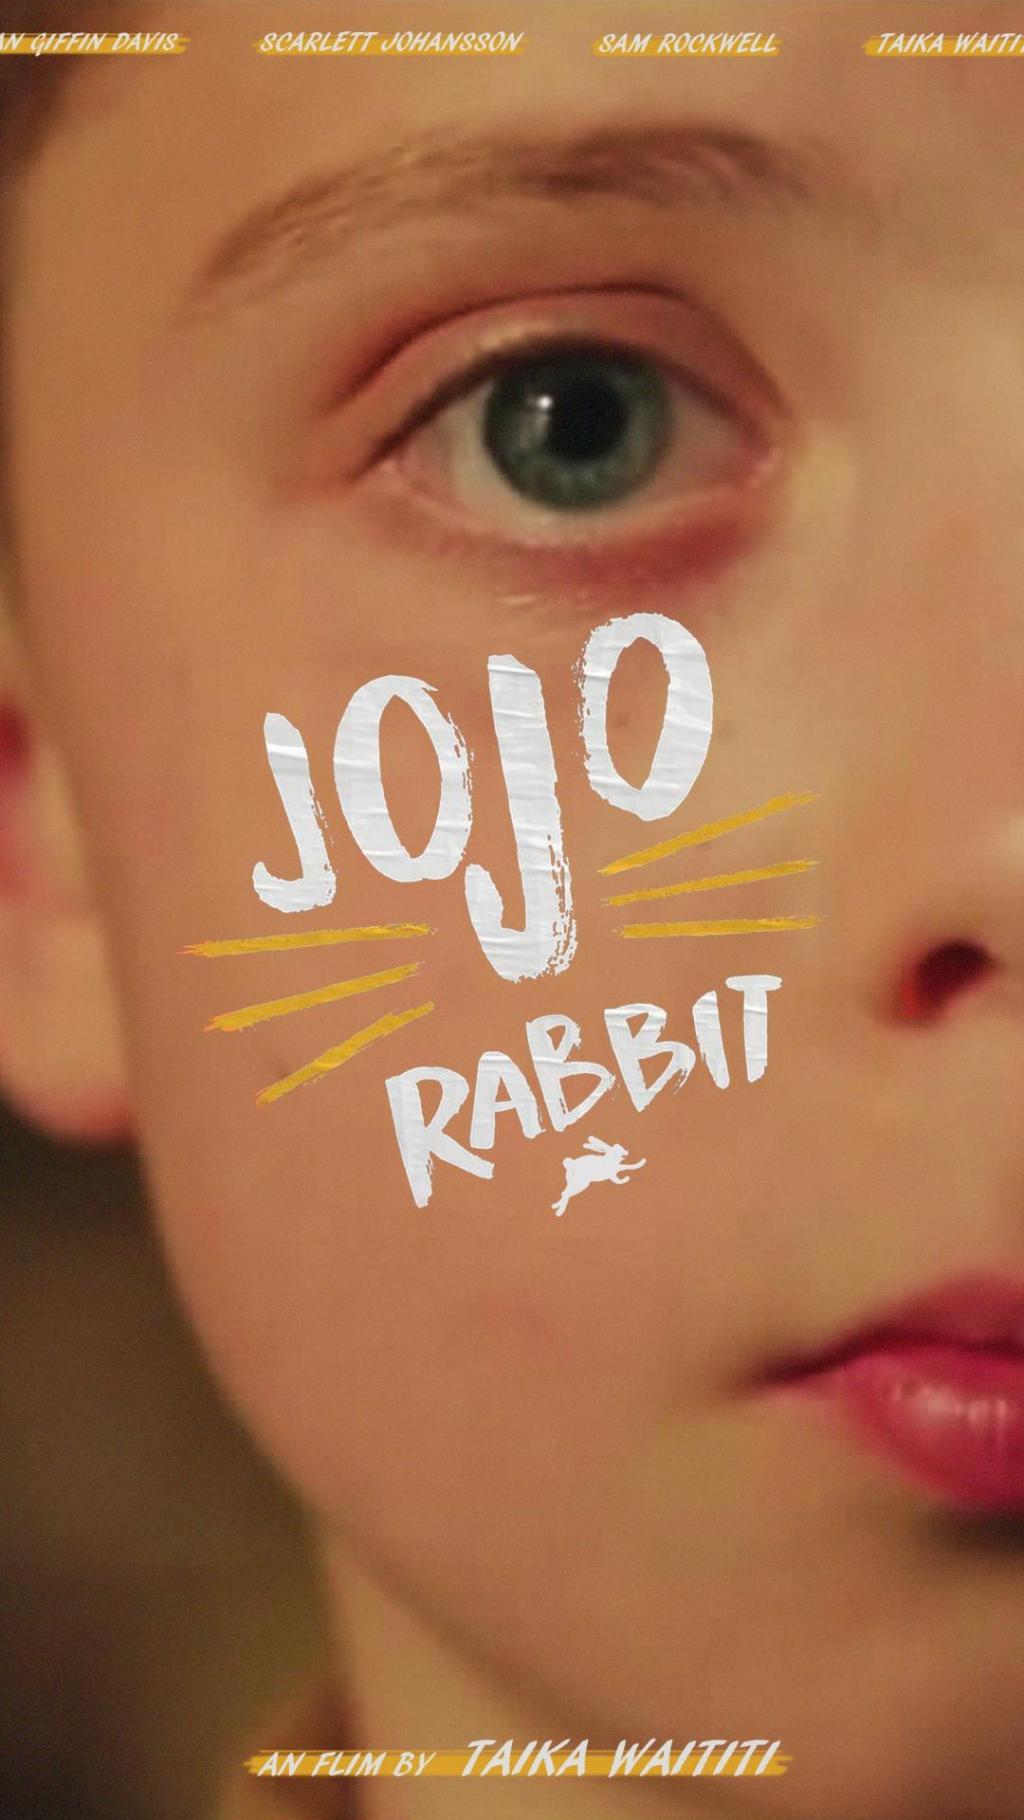 乔乔的异想世界 Jojo Rabbit (2020)手机壁纸